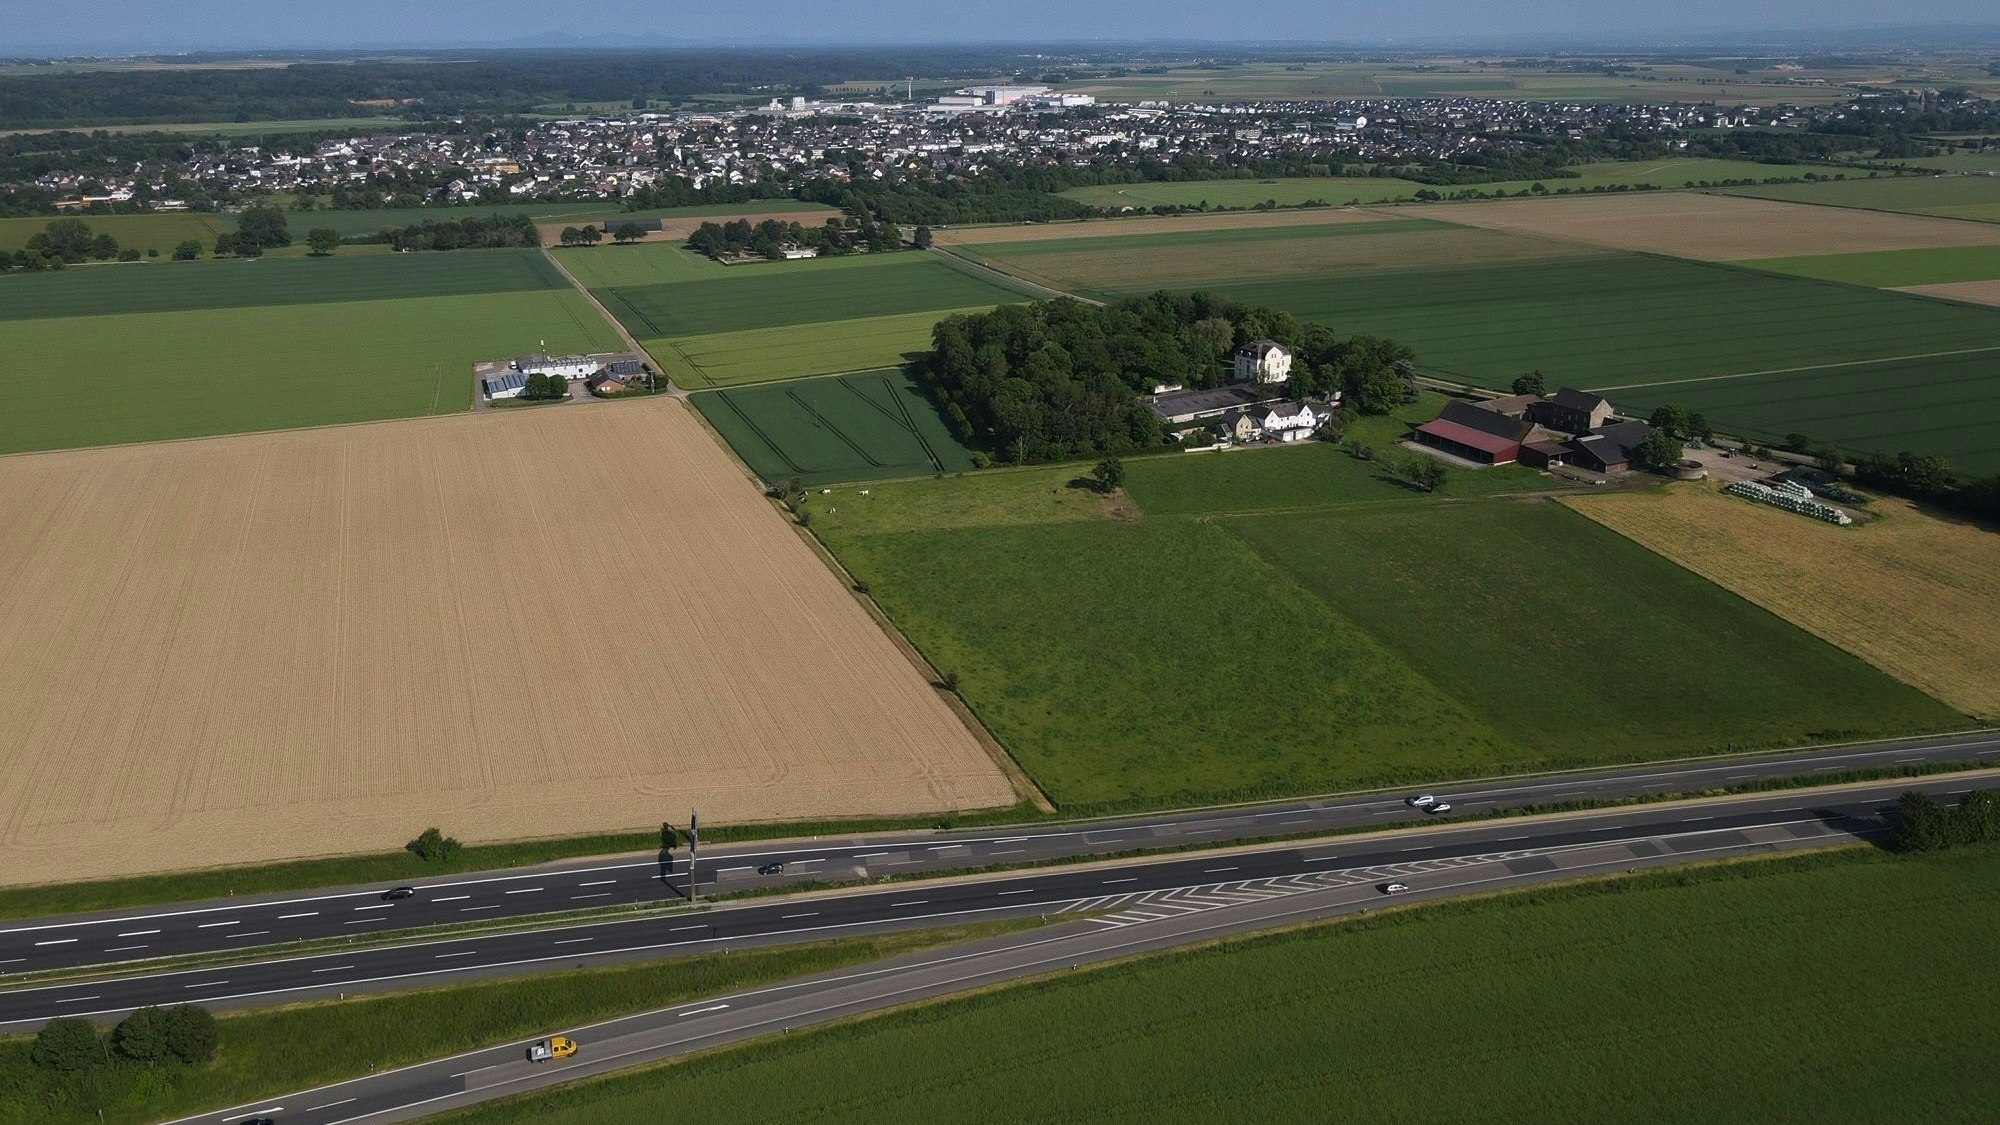 Im Bereich von Gut Neuheim, an der A1, wird auf einer Fläche von 6,3 Hektar ein Solarpark entstehen. Die Luftaufnahme zeigt das Areal, im Hintergrund ist Weilerswist zu erkennen.